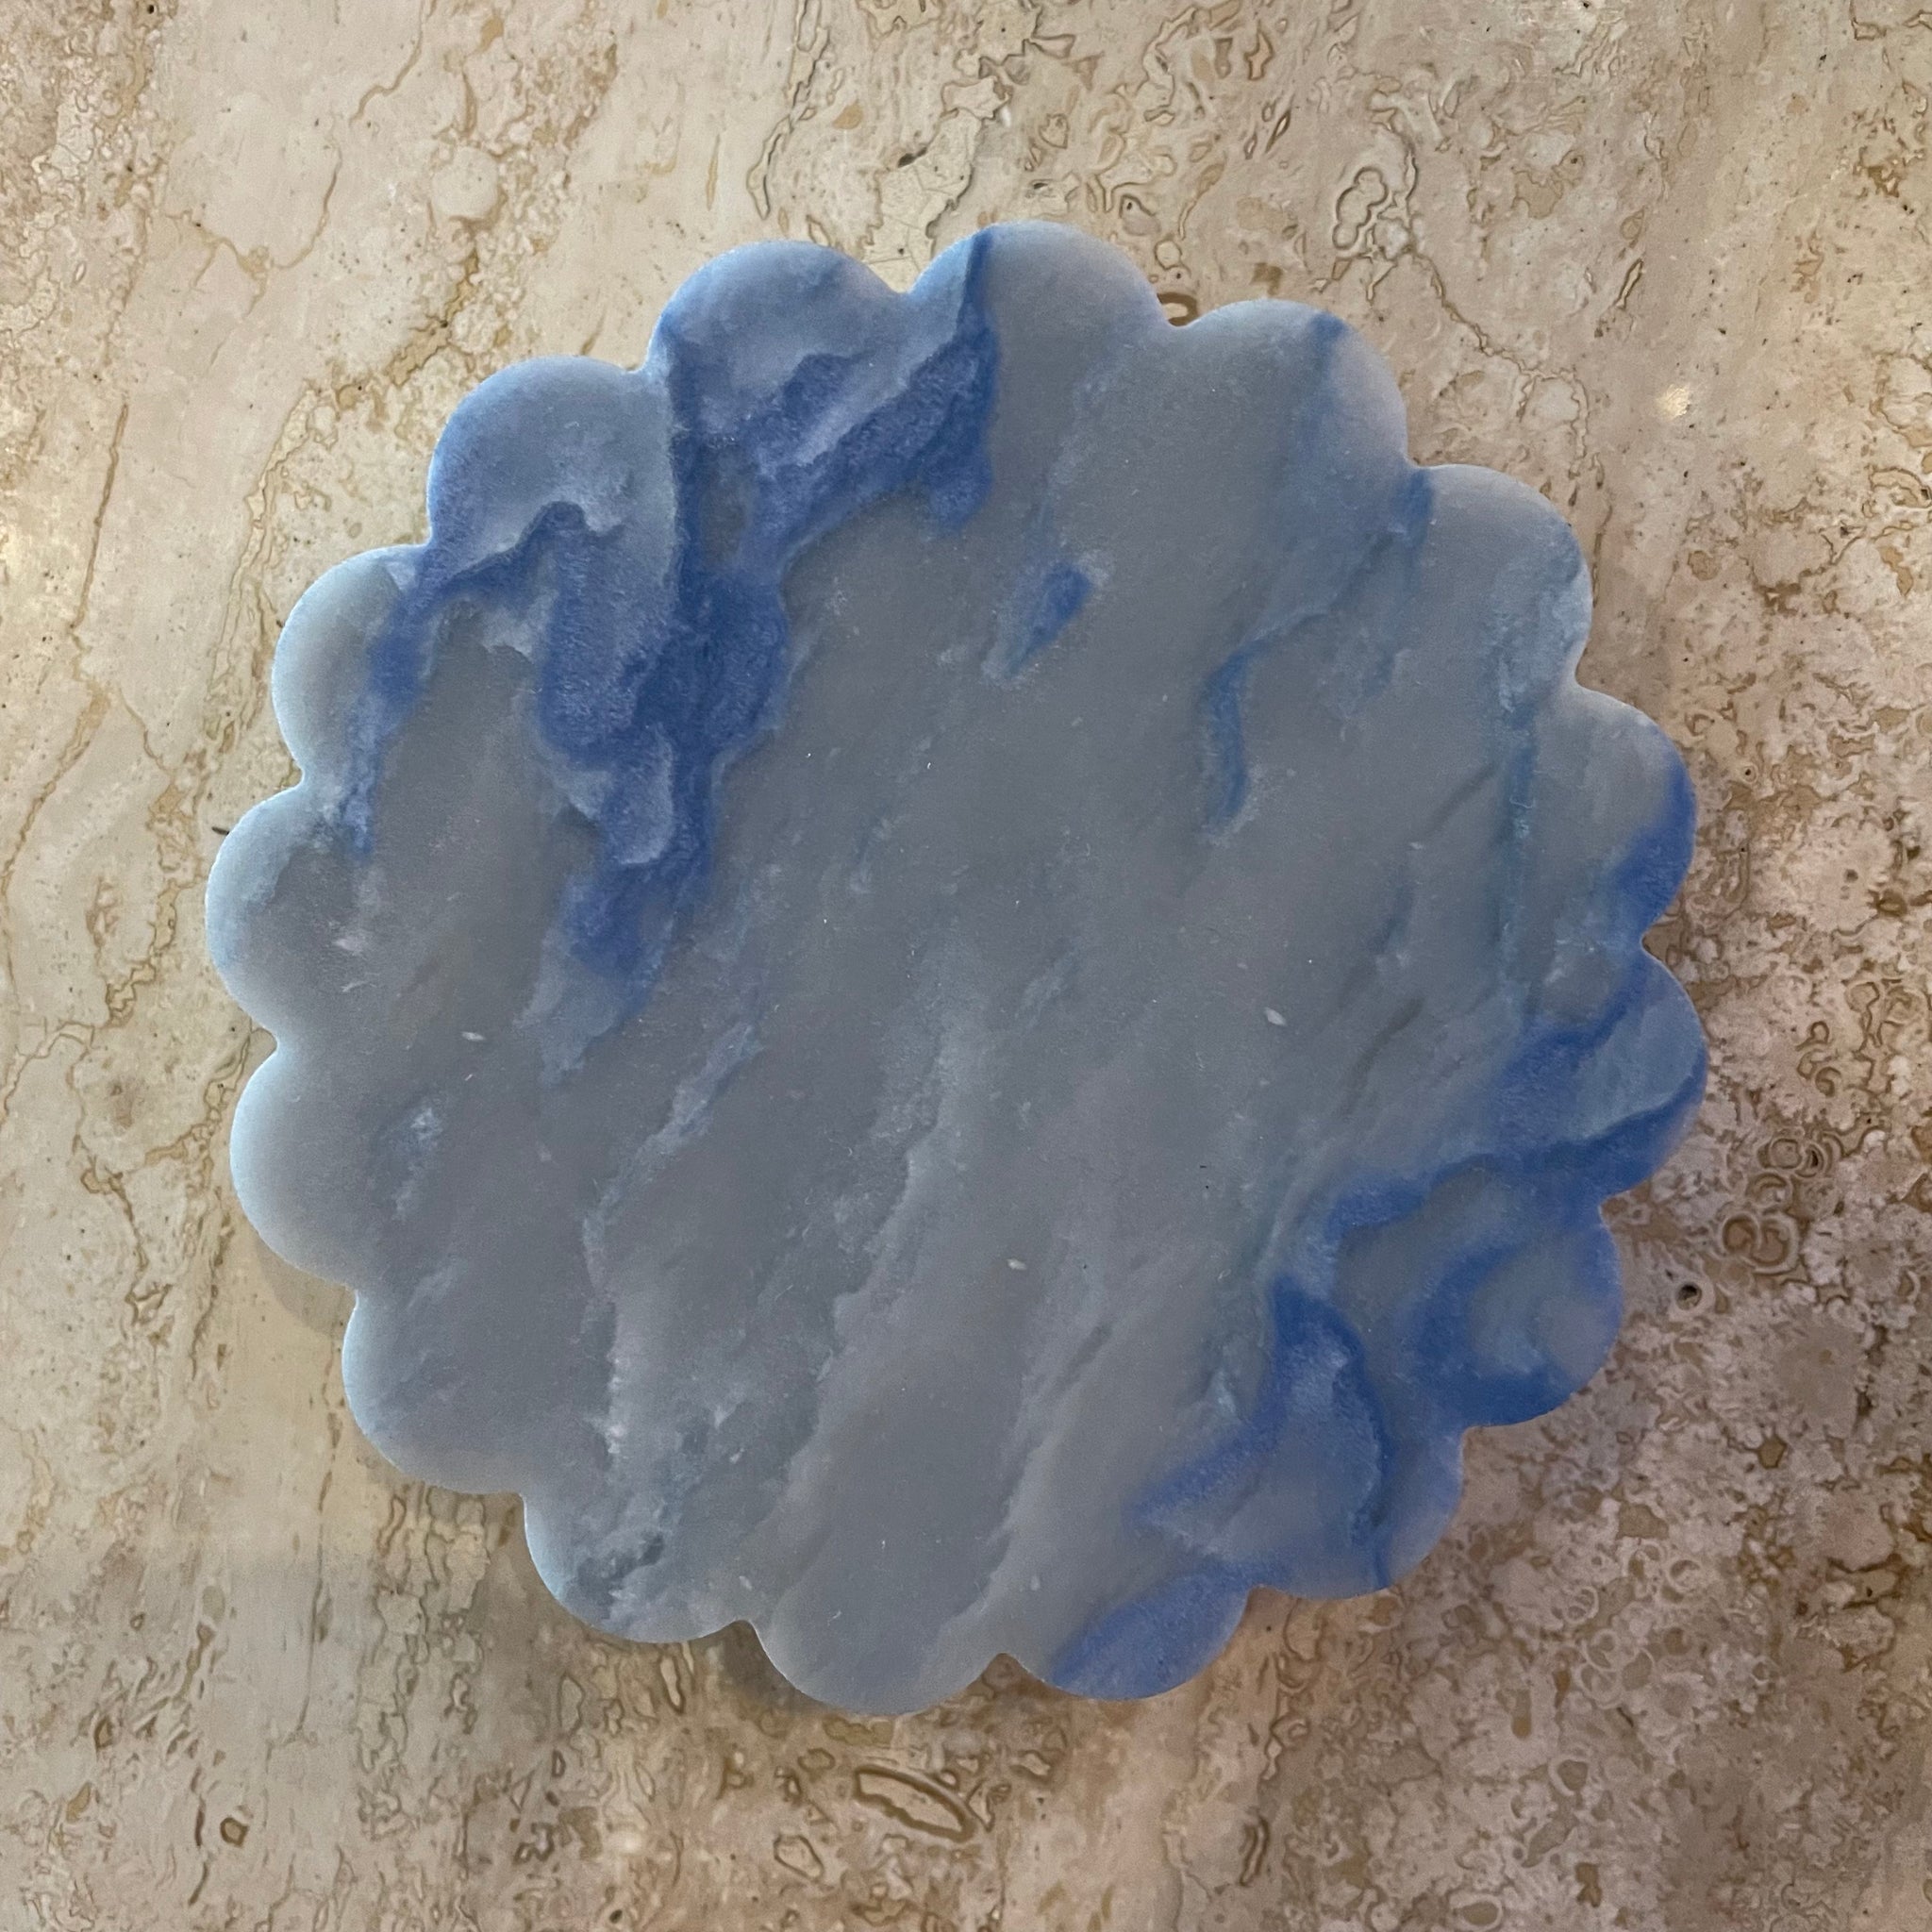 Branik Stone Trays - Small Round Decorative Trays Branik Azul Macaubas  